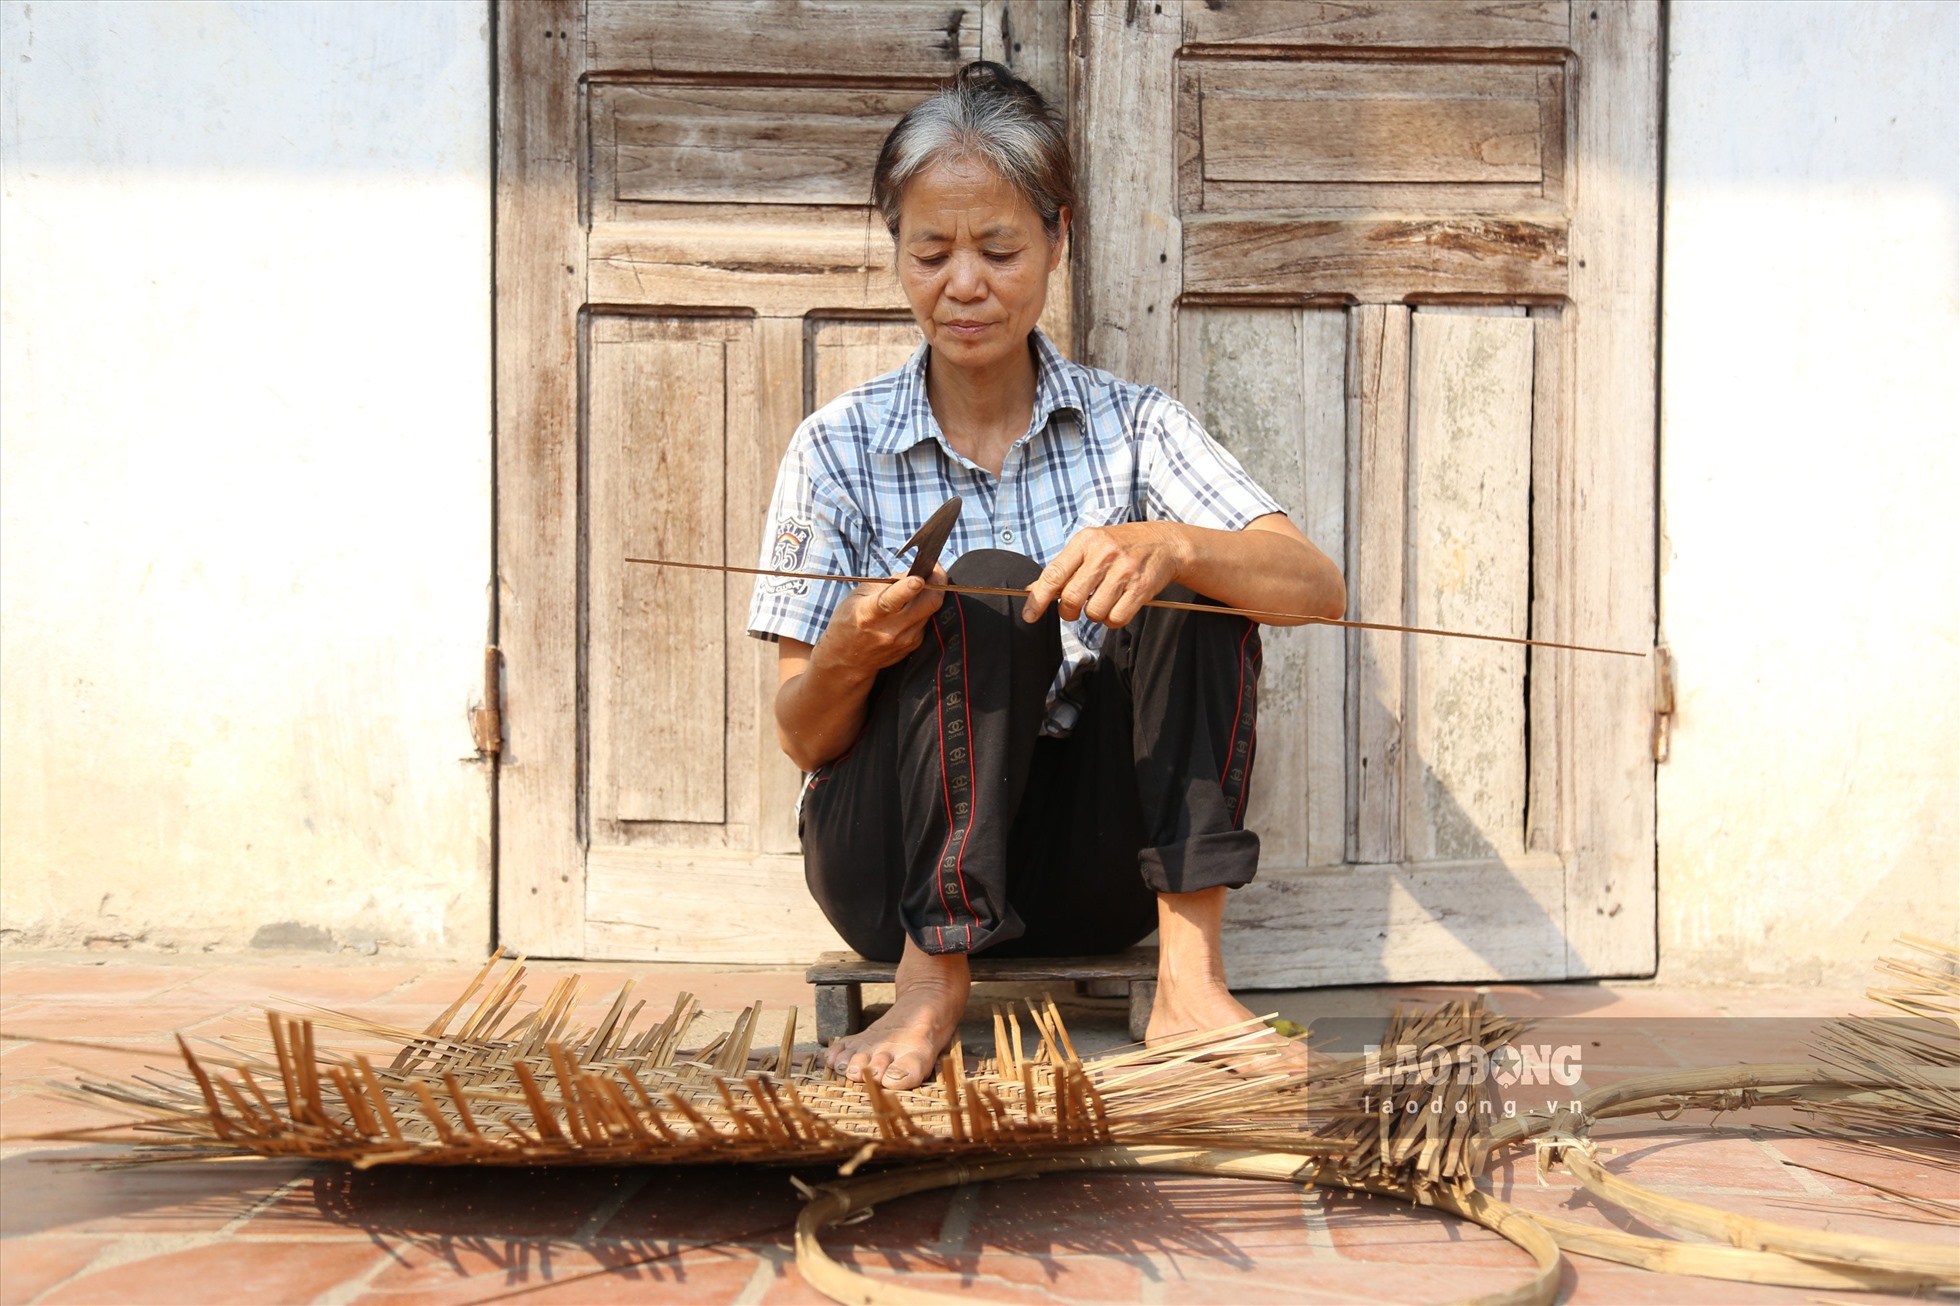 Ở thời điểm hiện tại, làng nghề đan lát chỉ phần lớn là người đã cao tuổi.